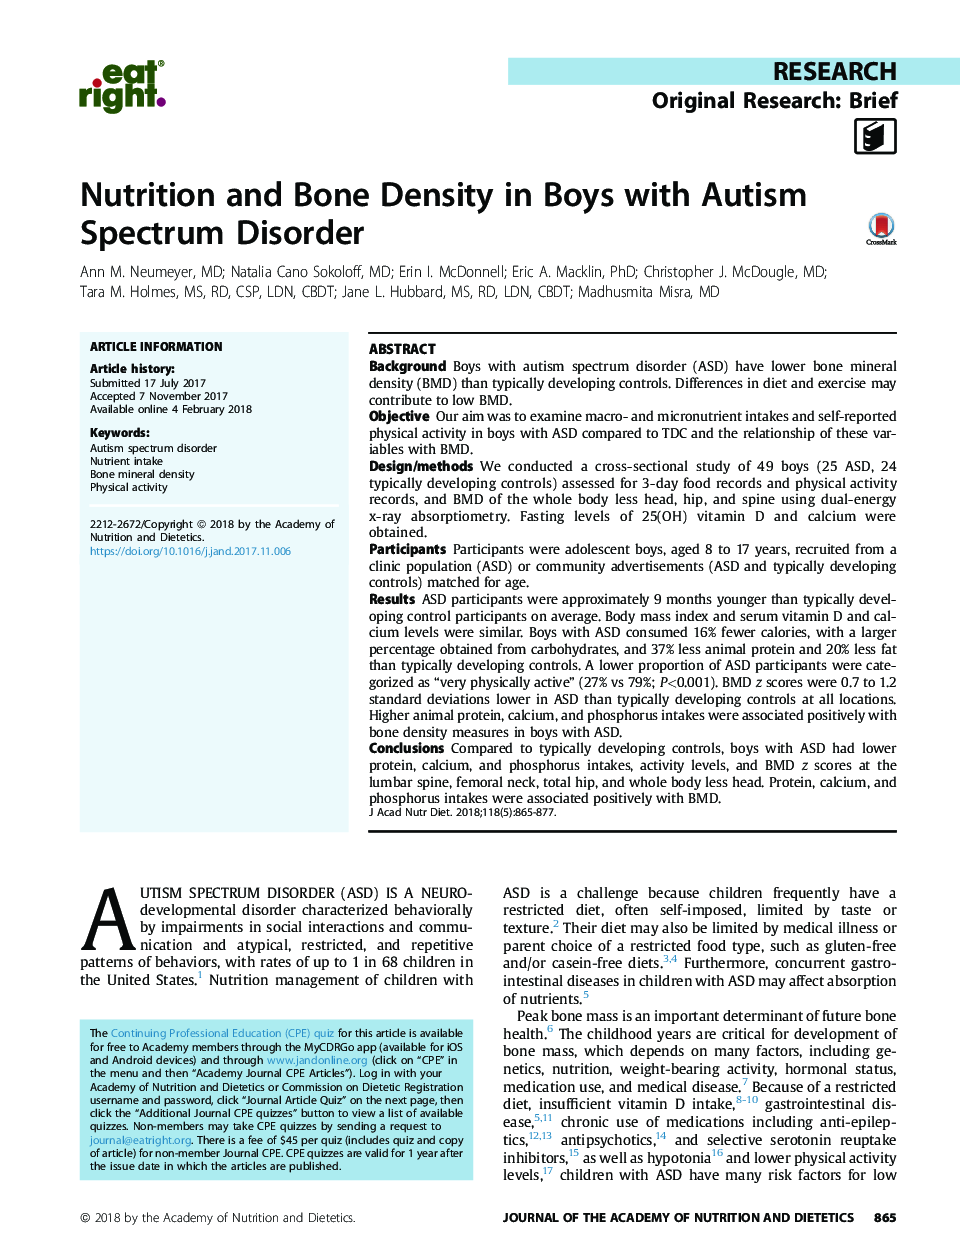 تغذیه و تراکم استخوان در پسران اختلال طیف اوتیسم 